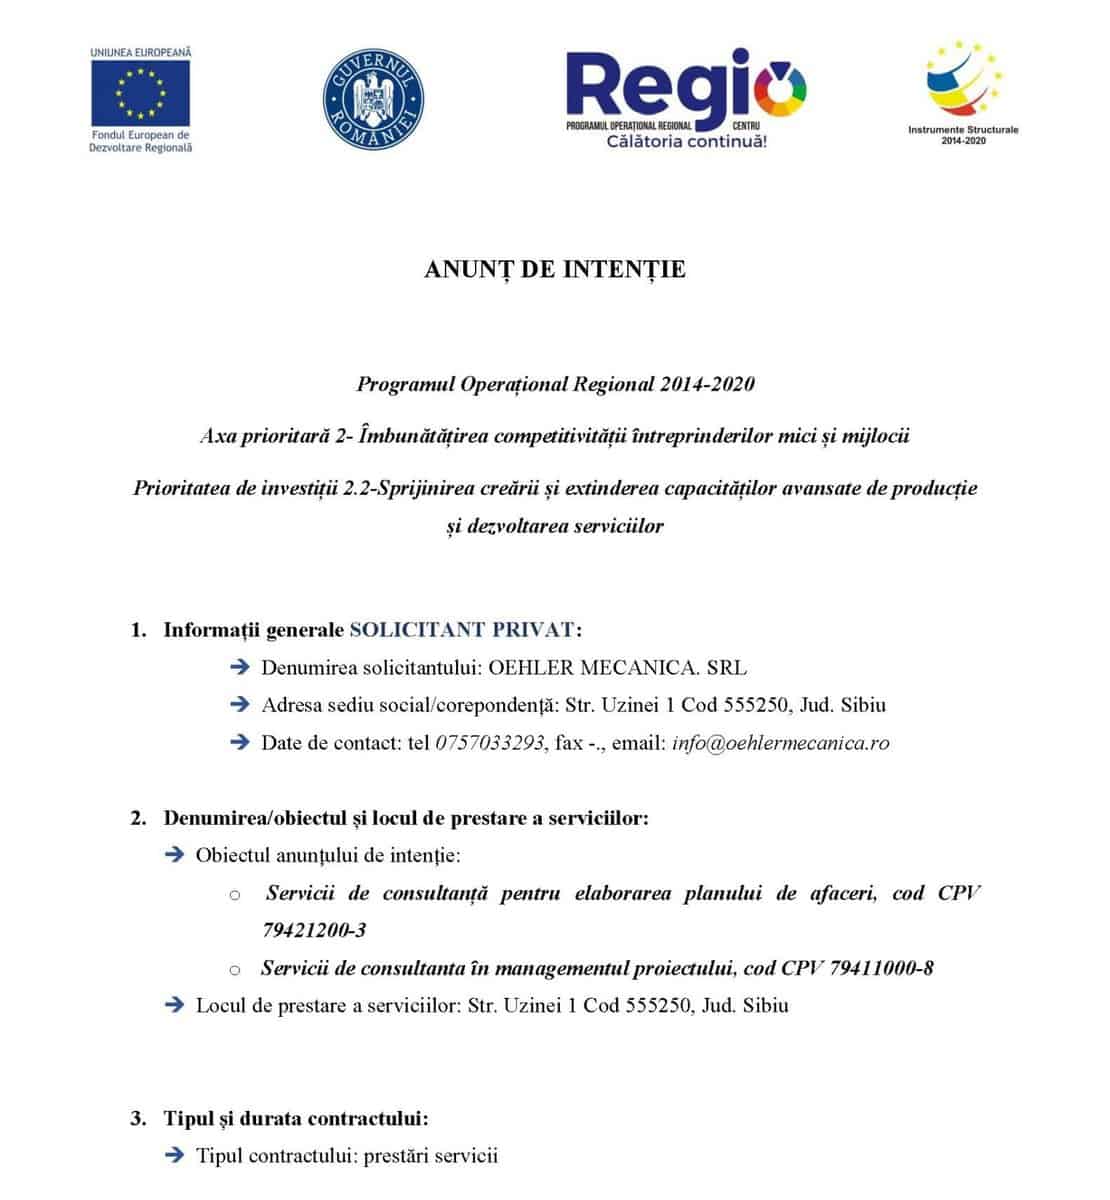 anunț de intenție - programul operațional regional 2014-2020